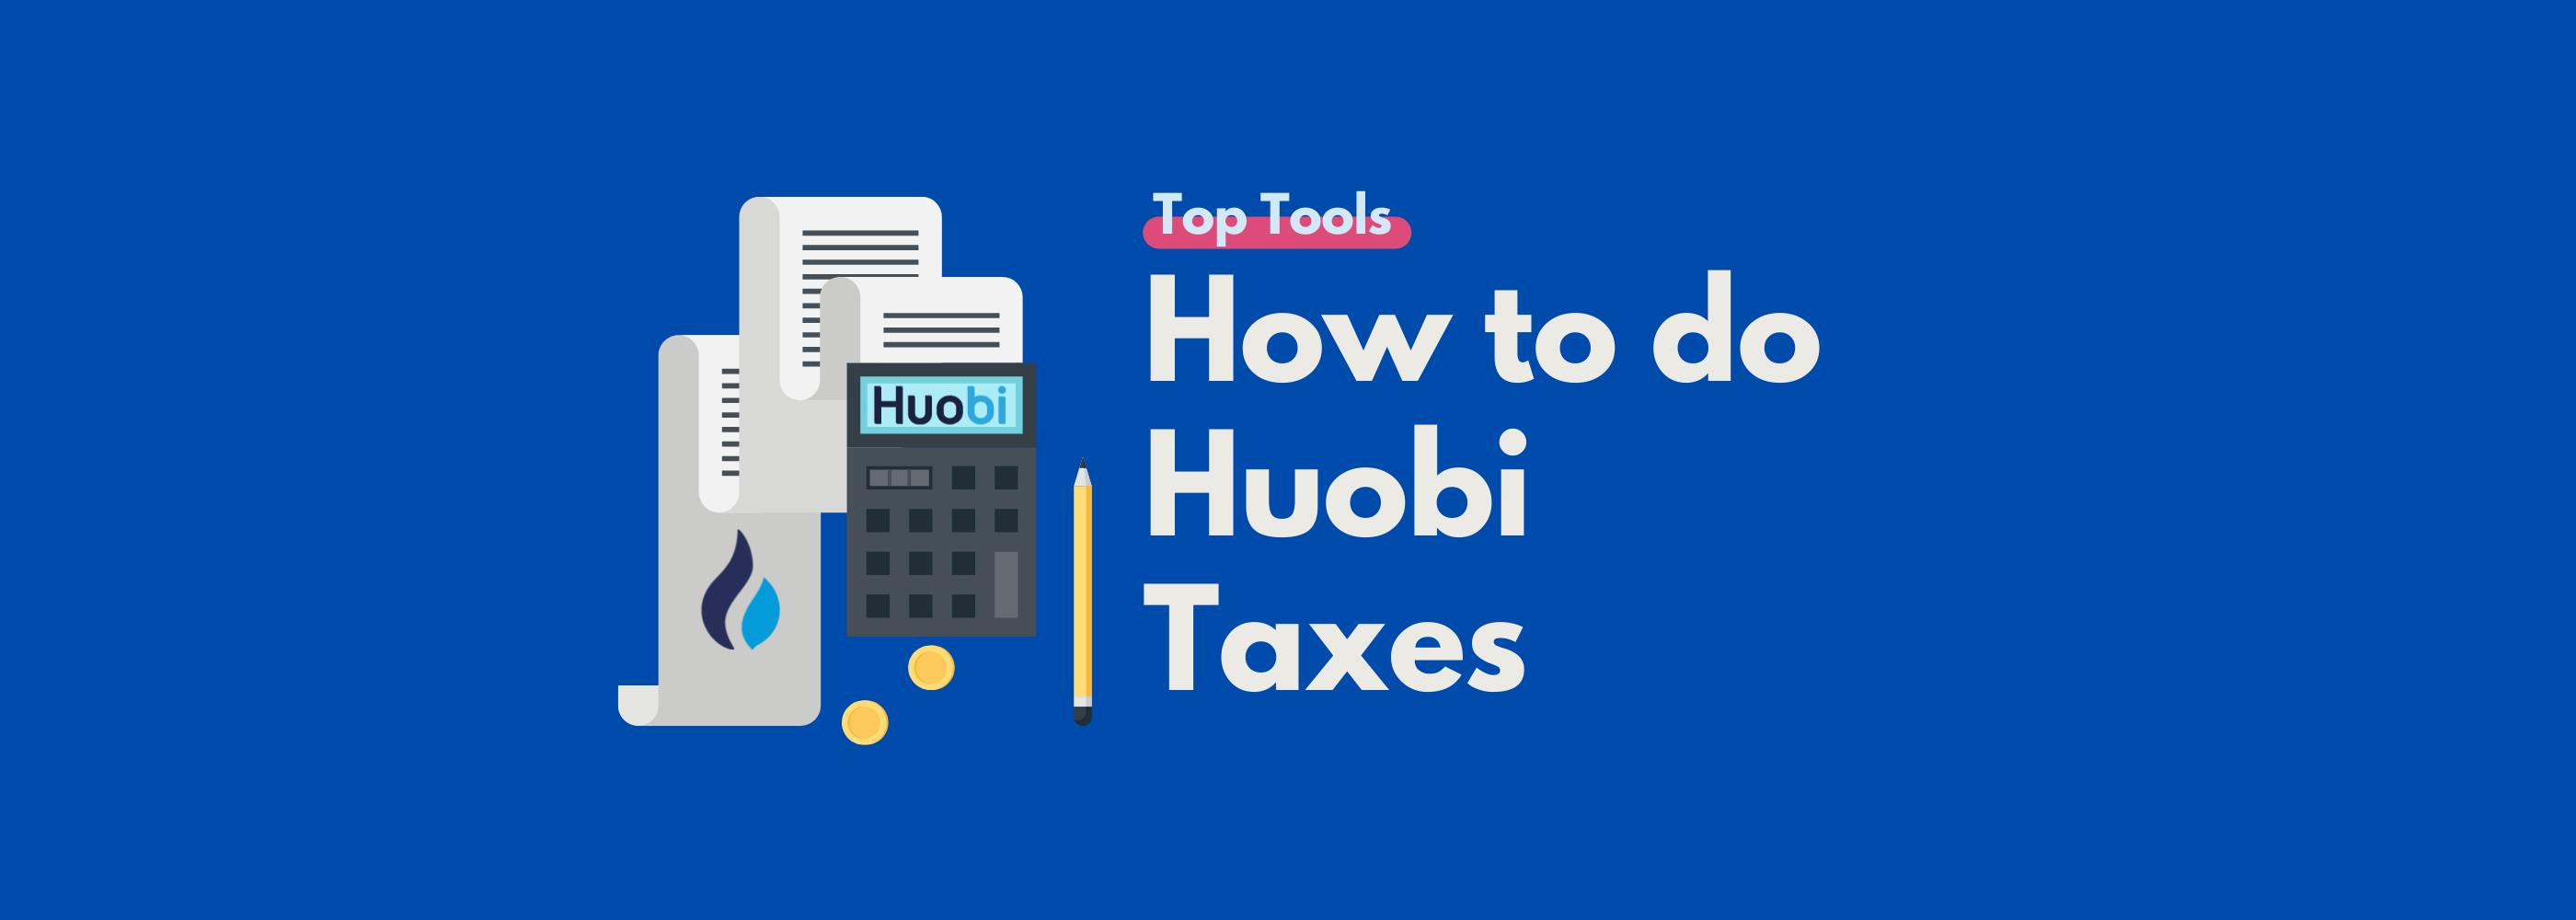 Huobi taxes guide